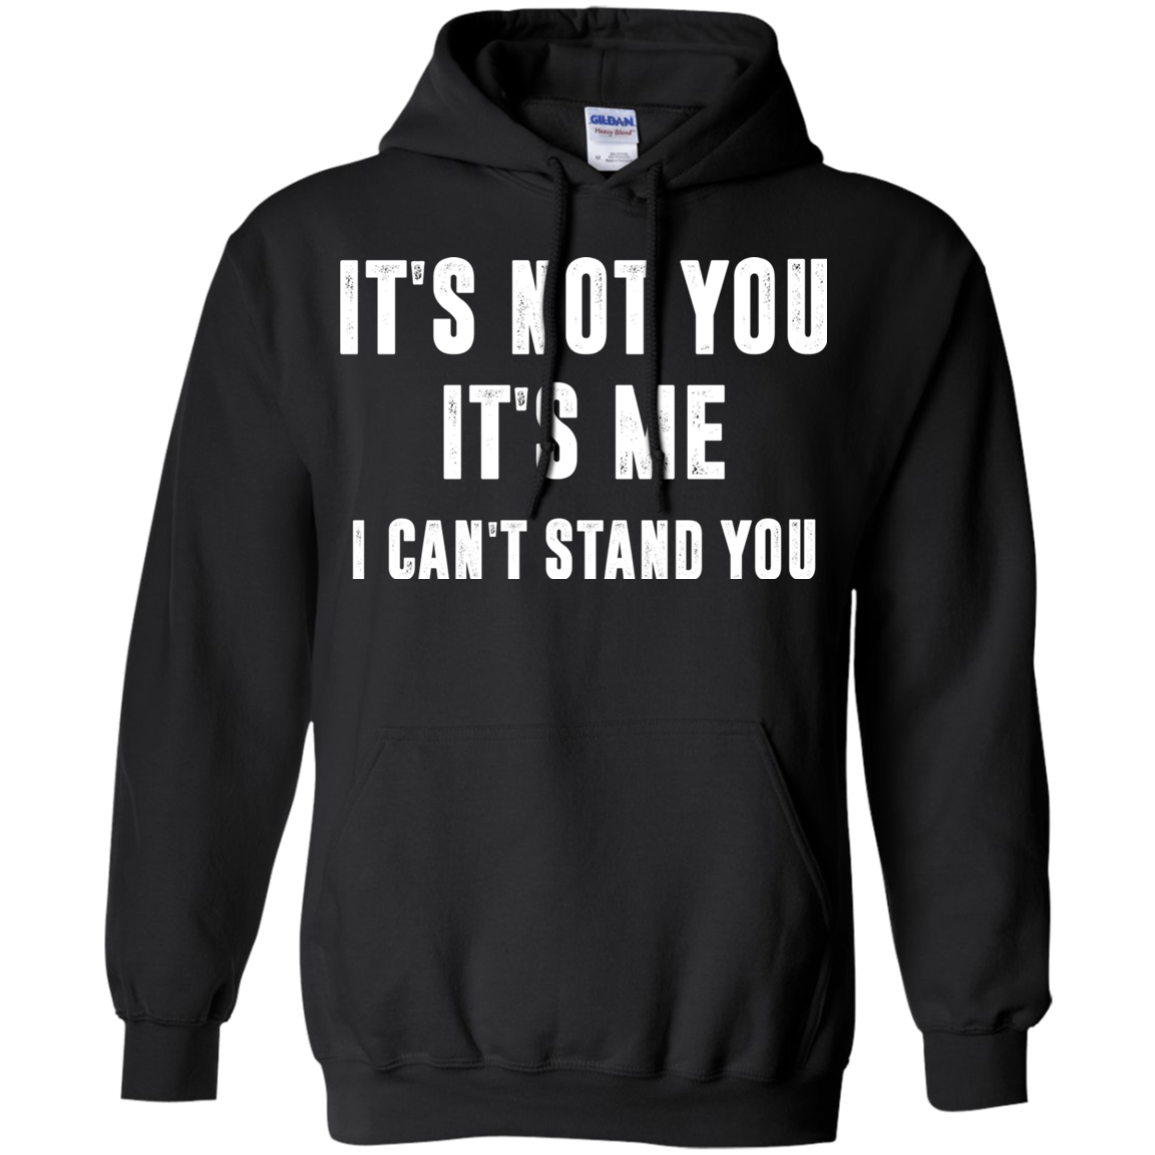 It’s not you, it’s me i can’t stand you tshirt, vneck, hoodie ...